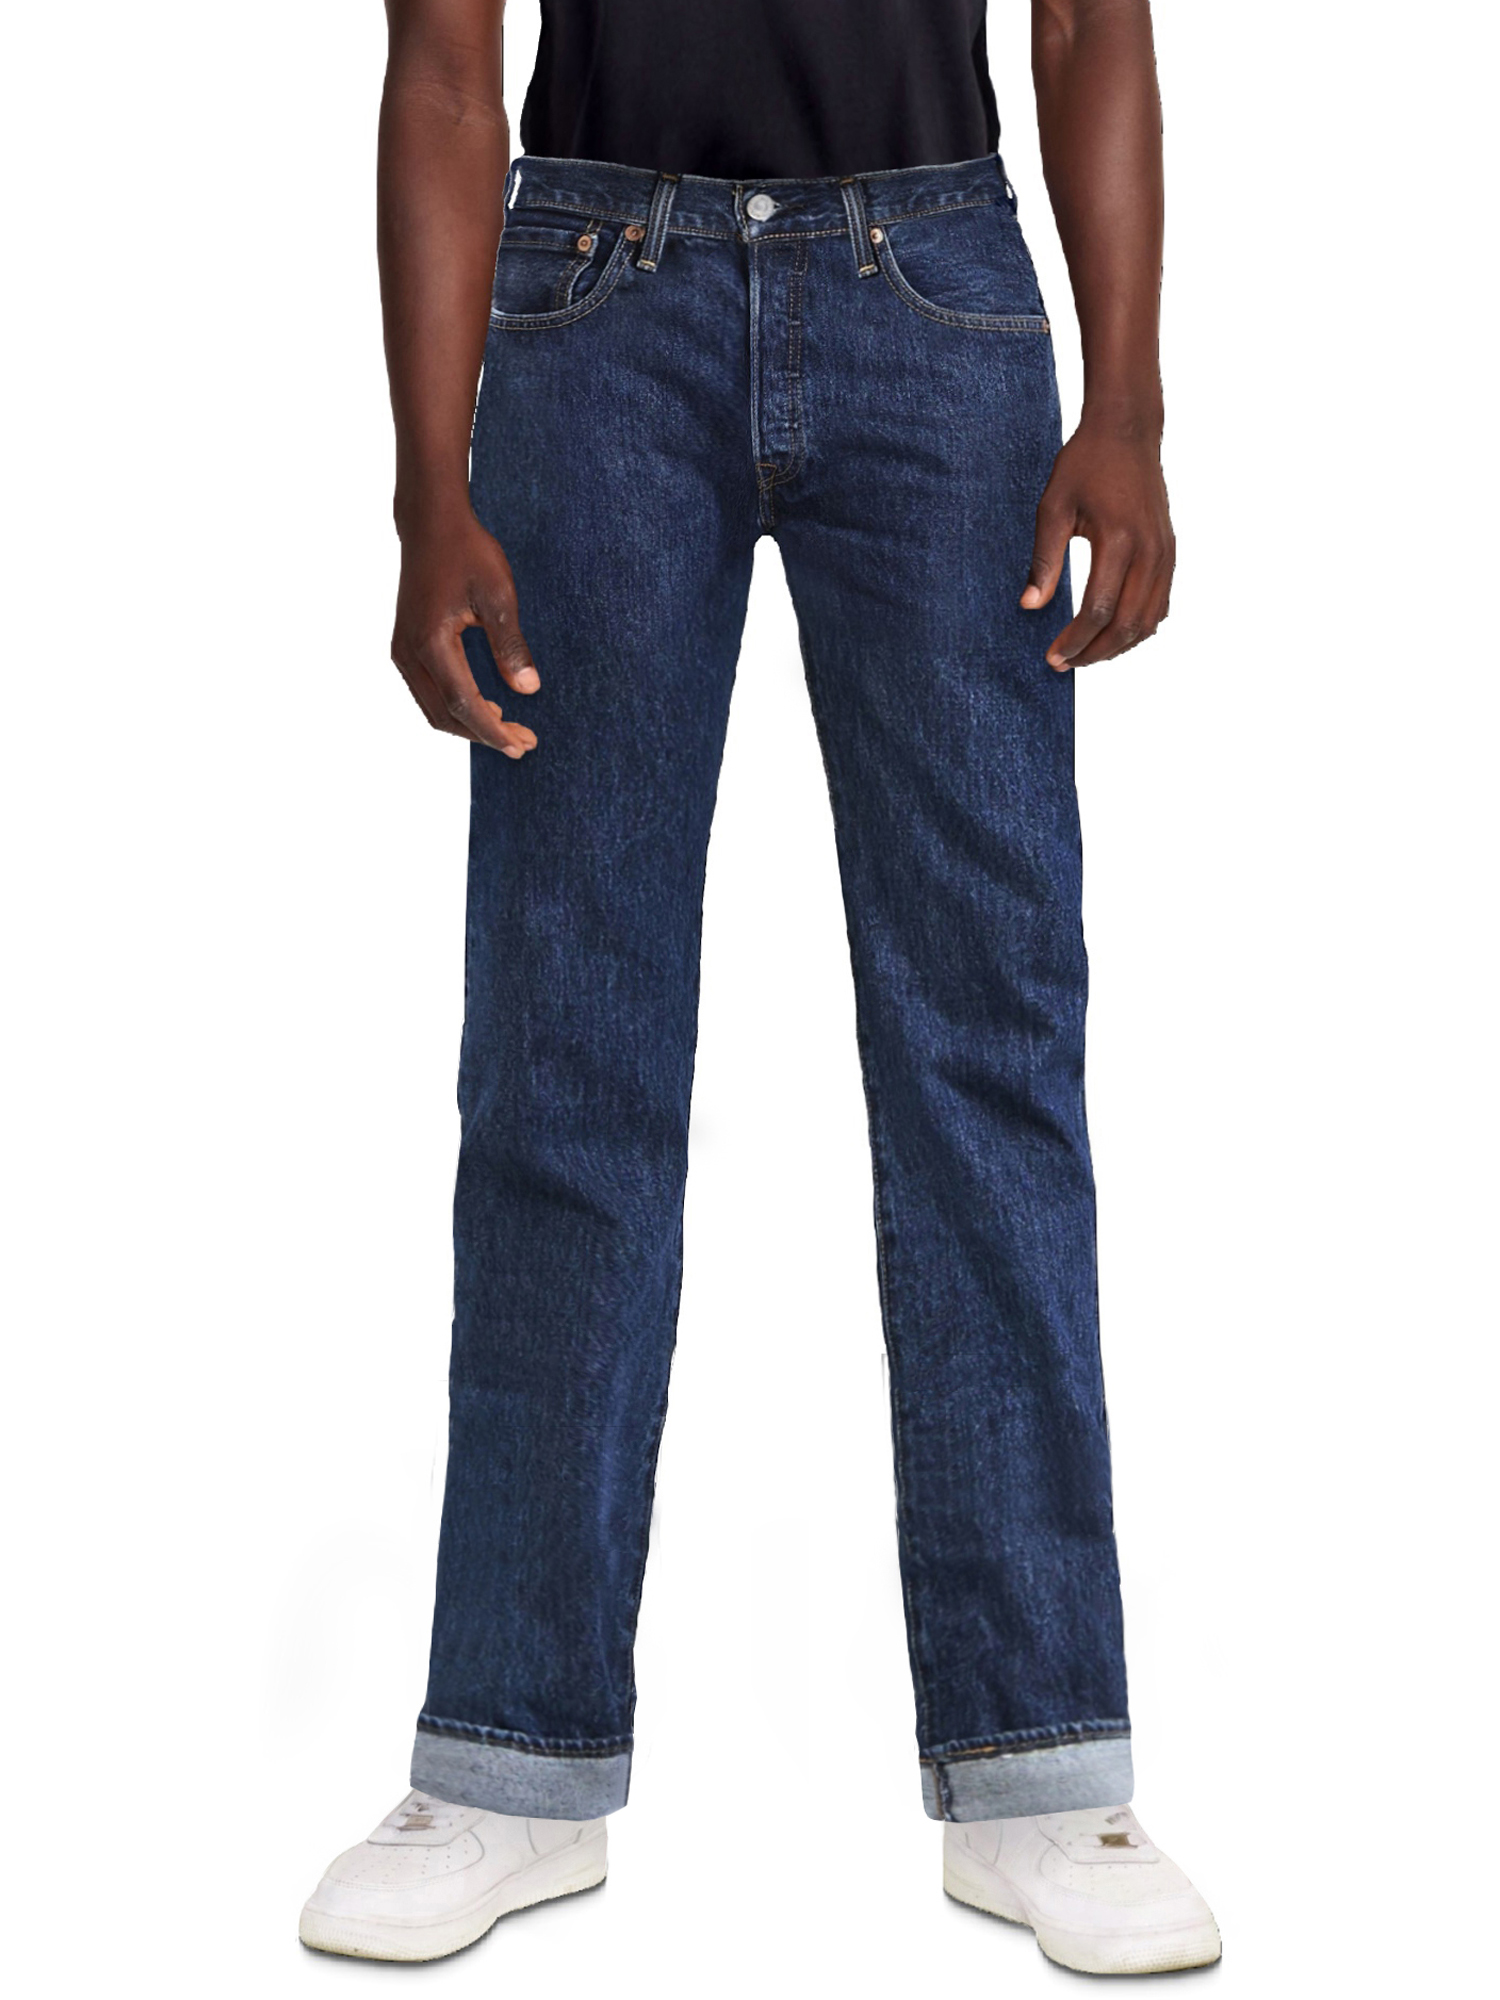 Levi's Men's 501 Original Fit Jeans - image 6 of 9